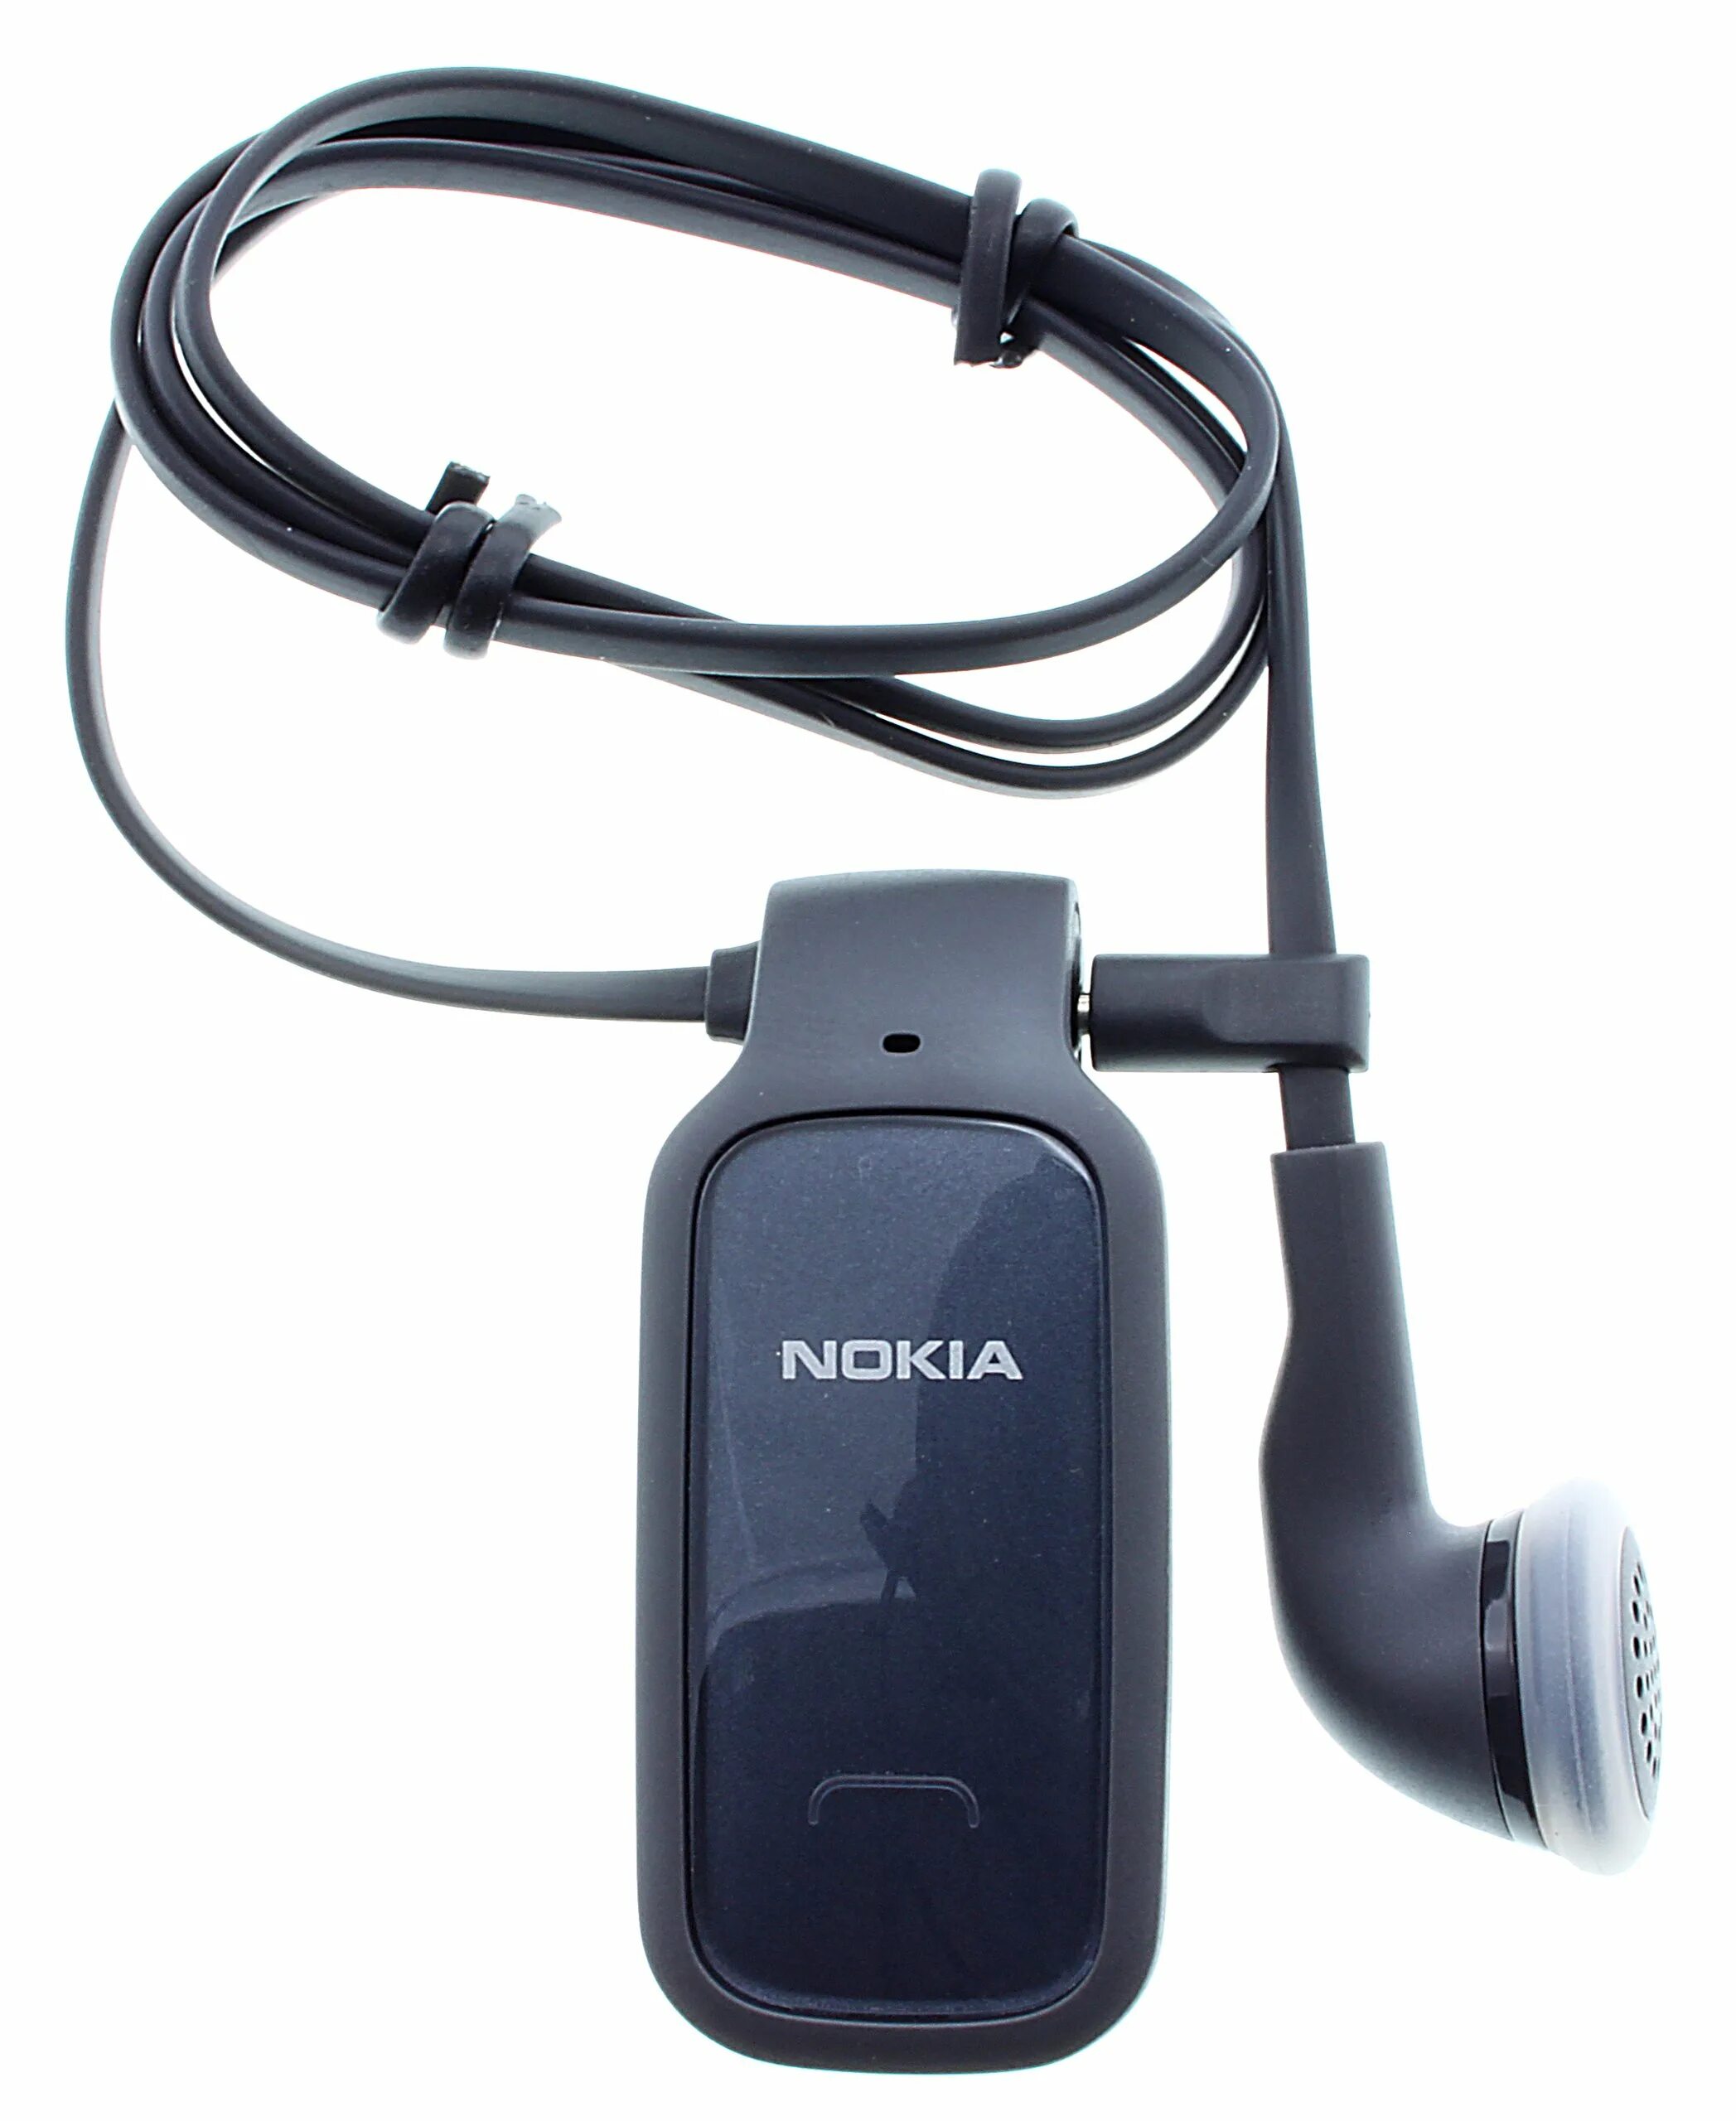 Блютуз нокия. Bluetooth-гарнитура Nokia BH-106. Bluetooth Nokia BH 106. Гарнитура Nokia Bluetooth 2005. Гарнитура Nokia Bluetooth 2006.